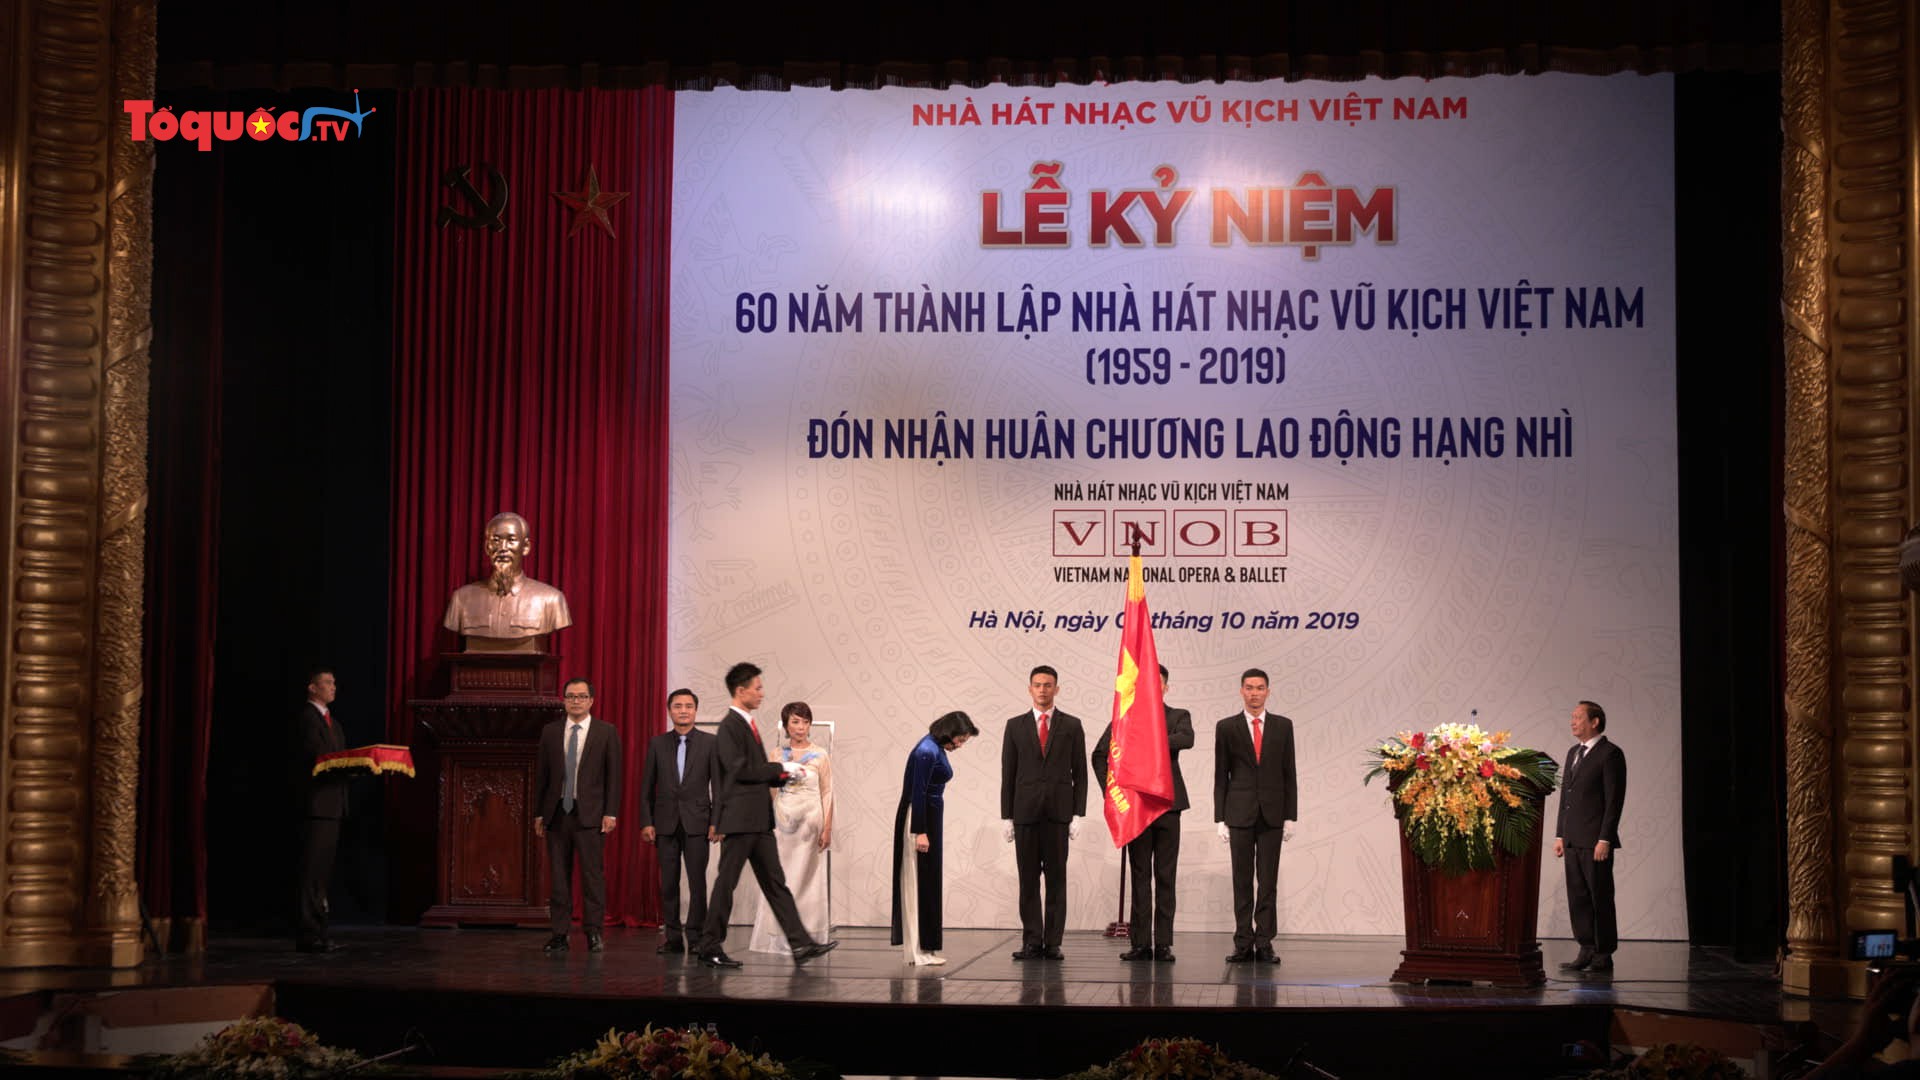 Nhà hát nhạc Vũ kịch Việt Nam kỷ niệm 60 năm thành lập và đón Huân chương Lao động hạng Nhì